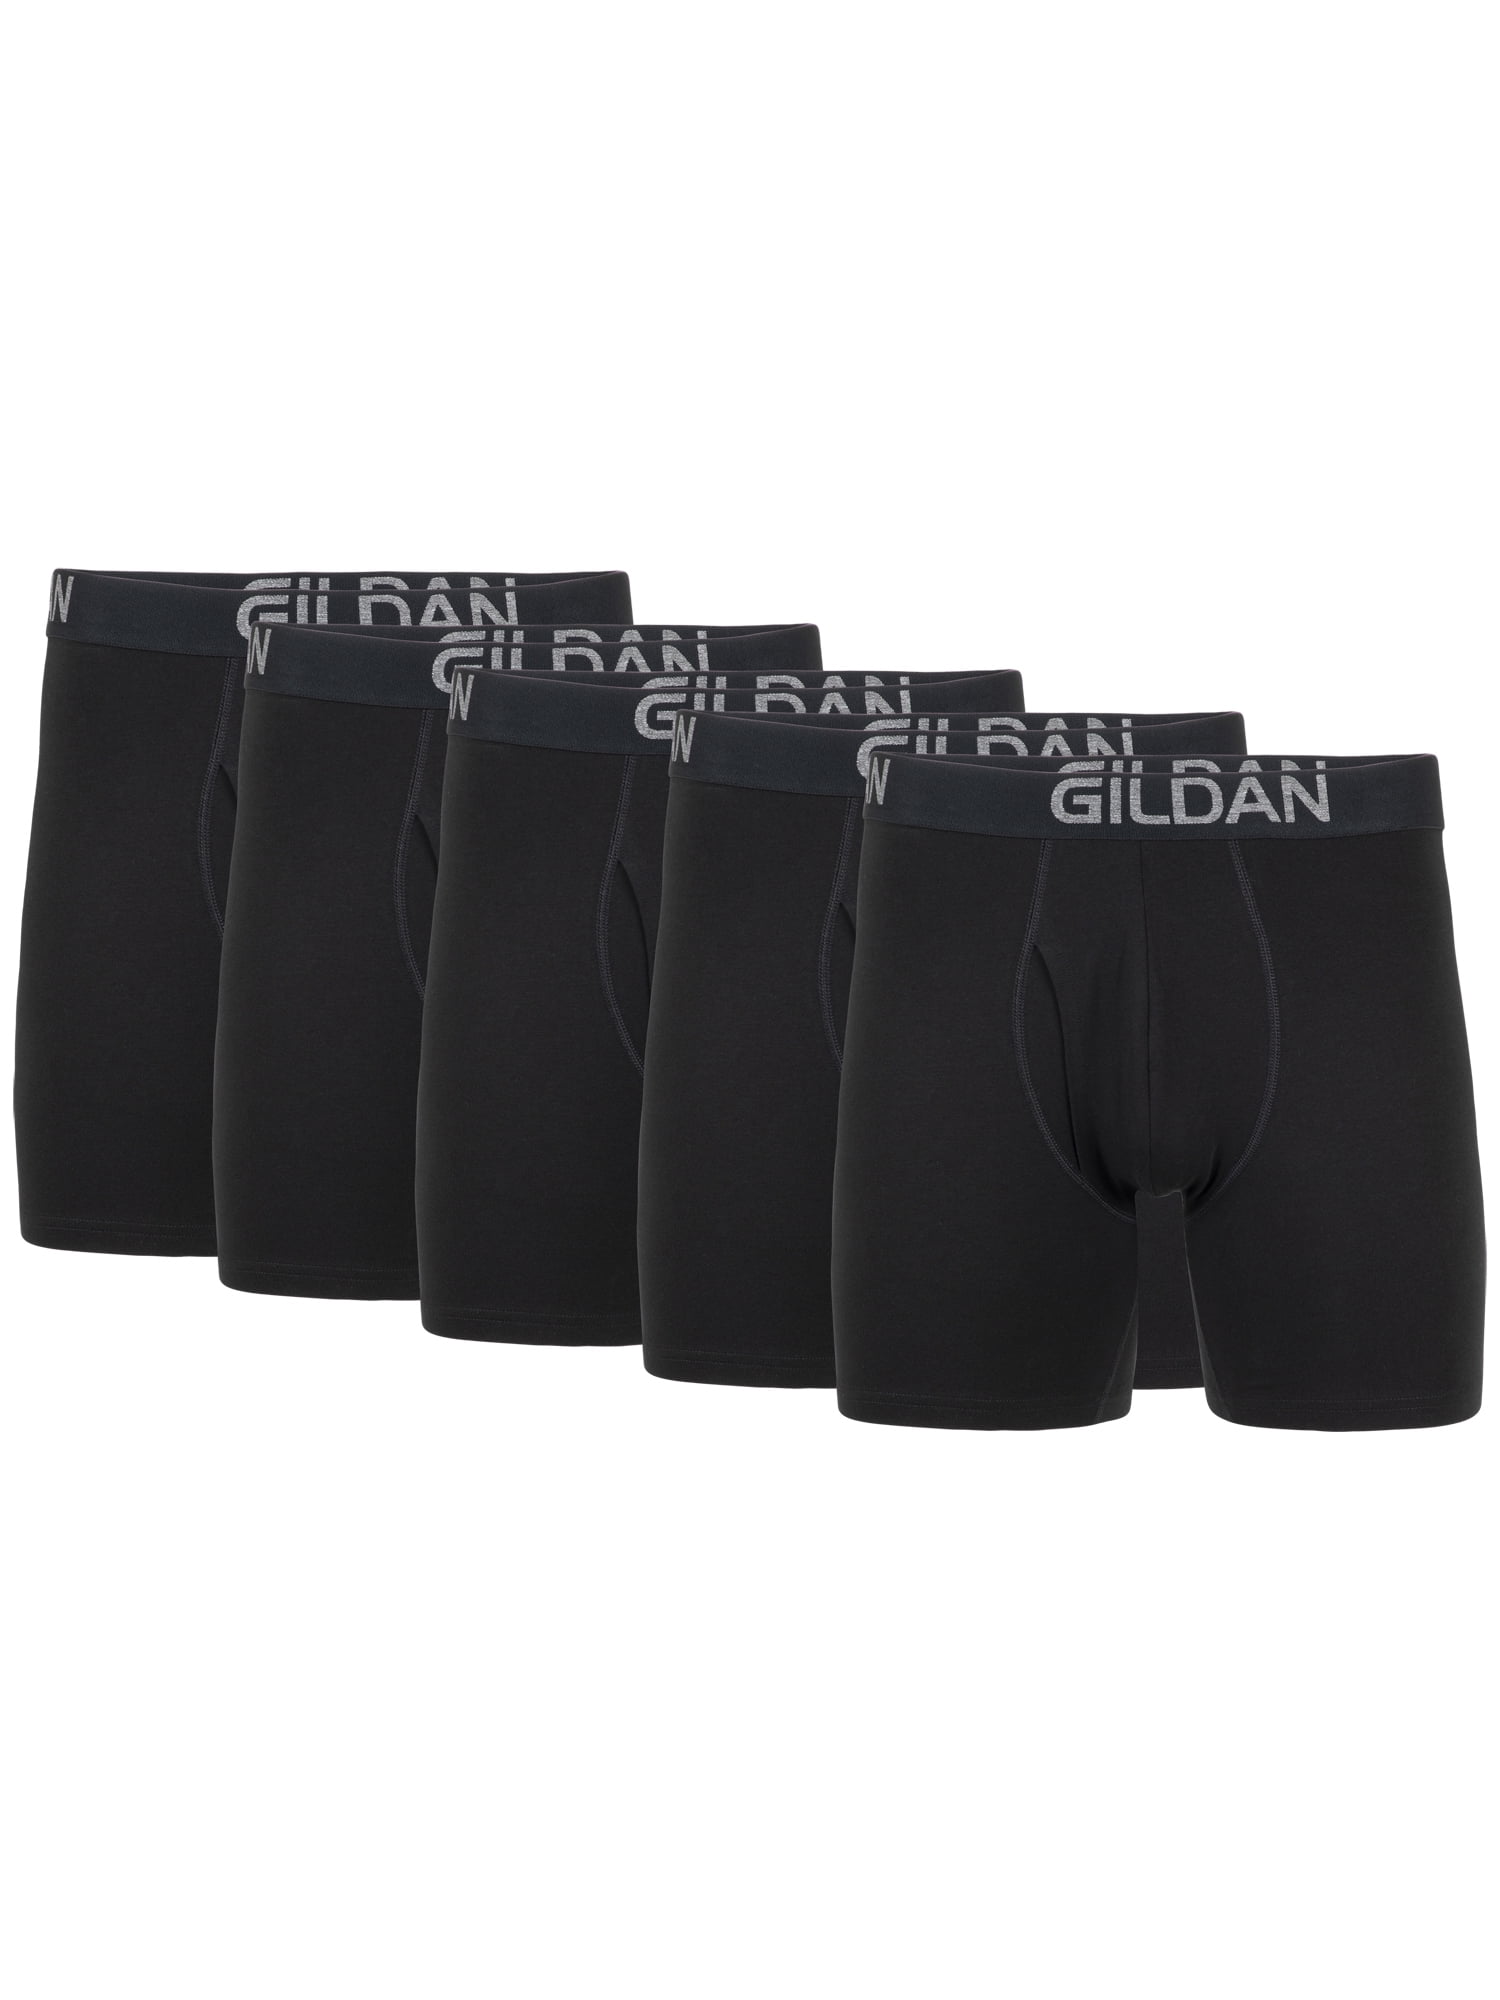 Gildan Men's Cotton Stretch Long Leg Boxer Brief